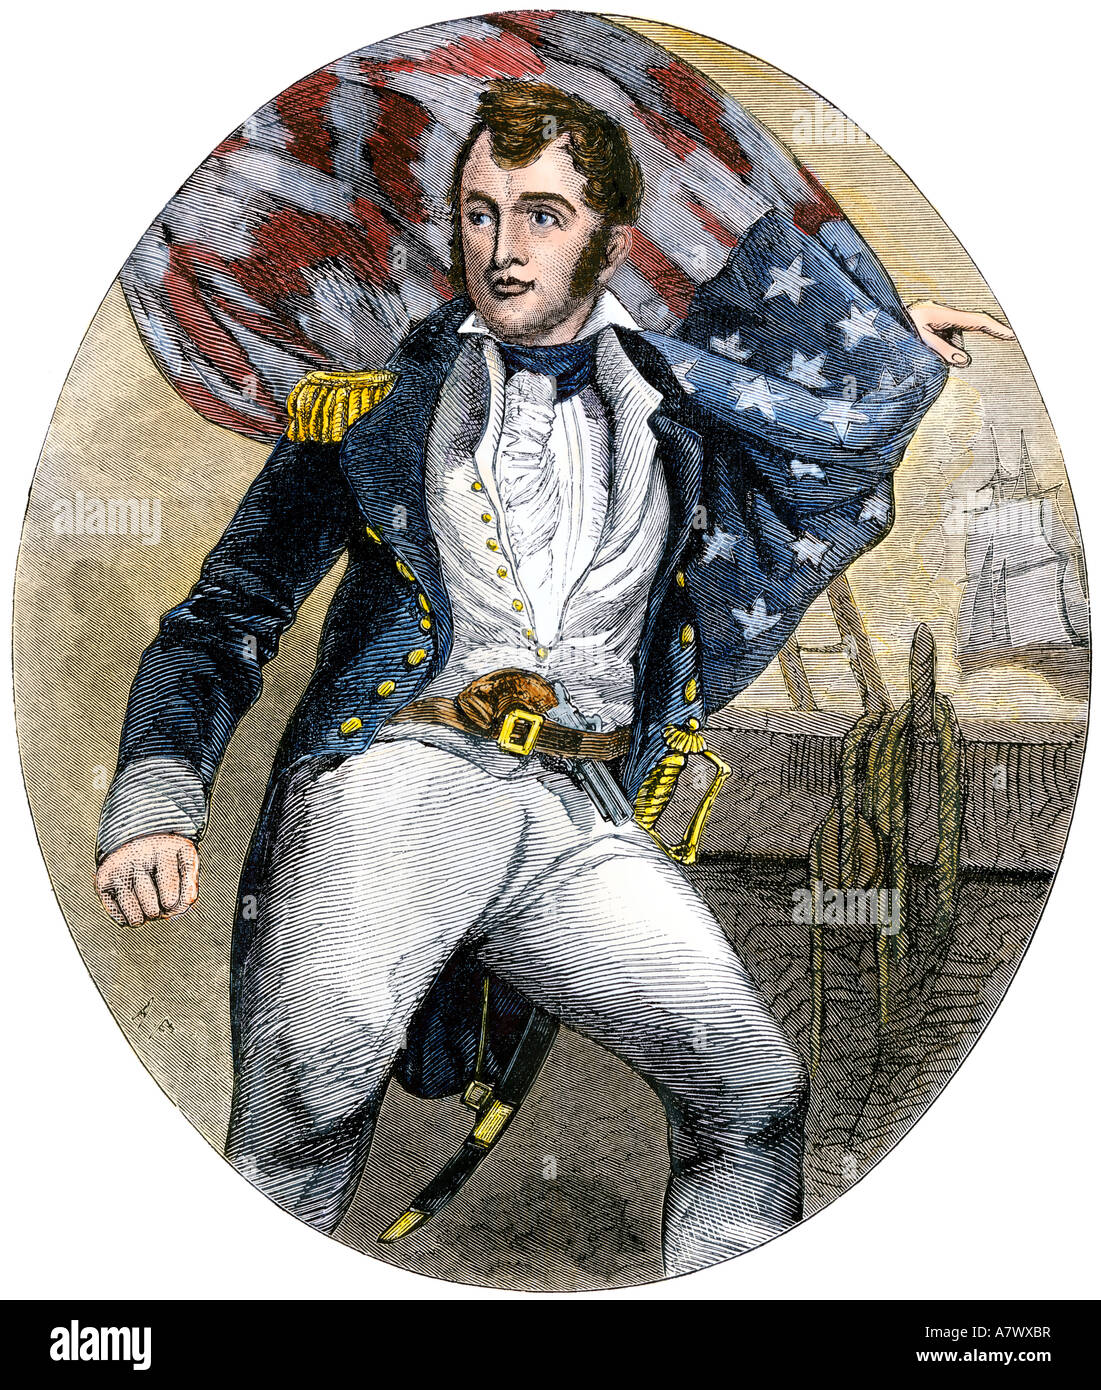 Oliver H. Perry en la jarcia, la guerra de 1812. Xilografía coloreada a mano Foto de stock